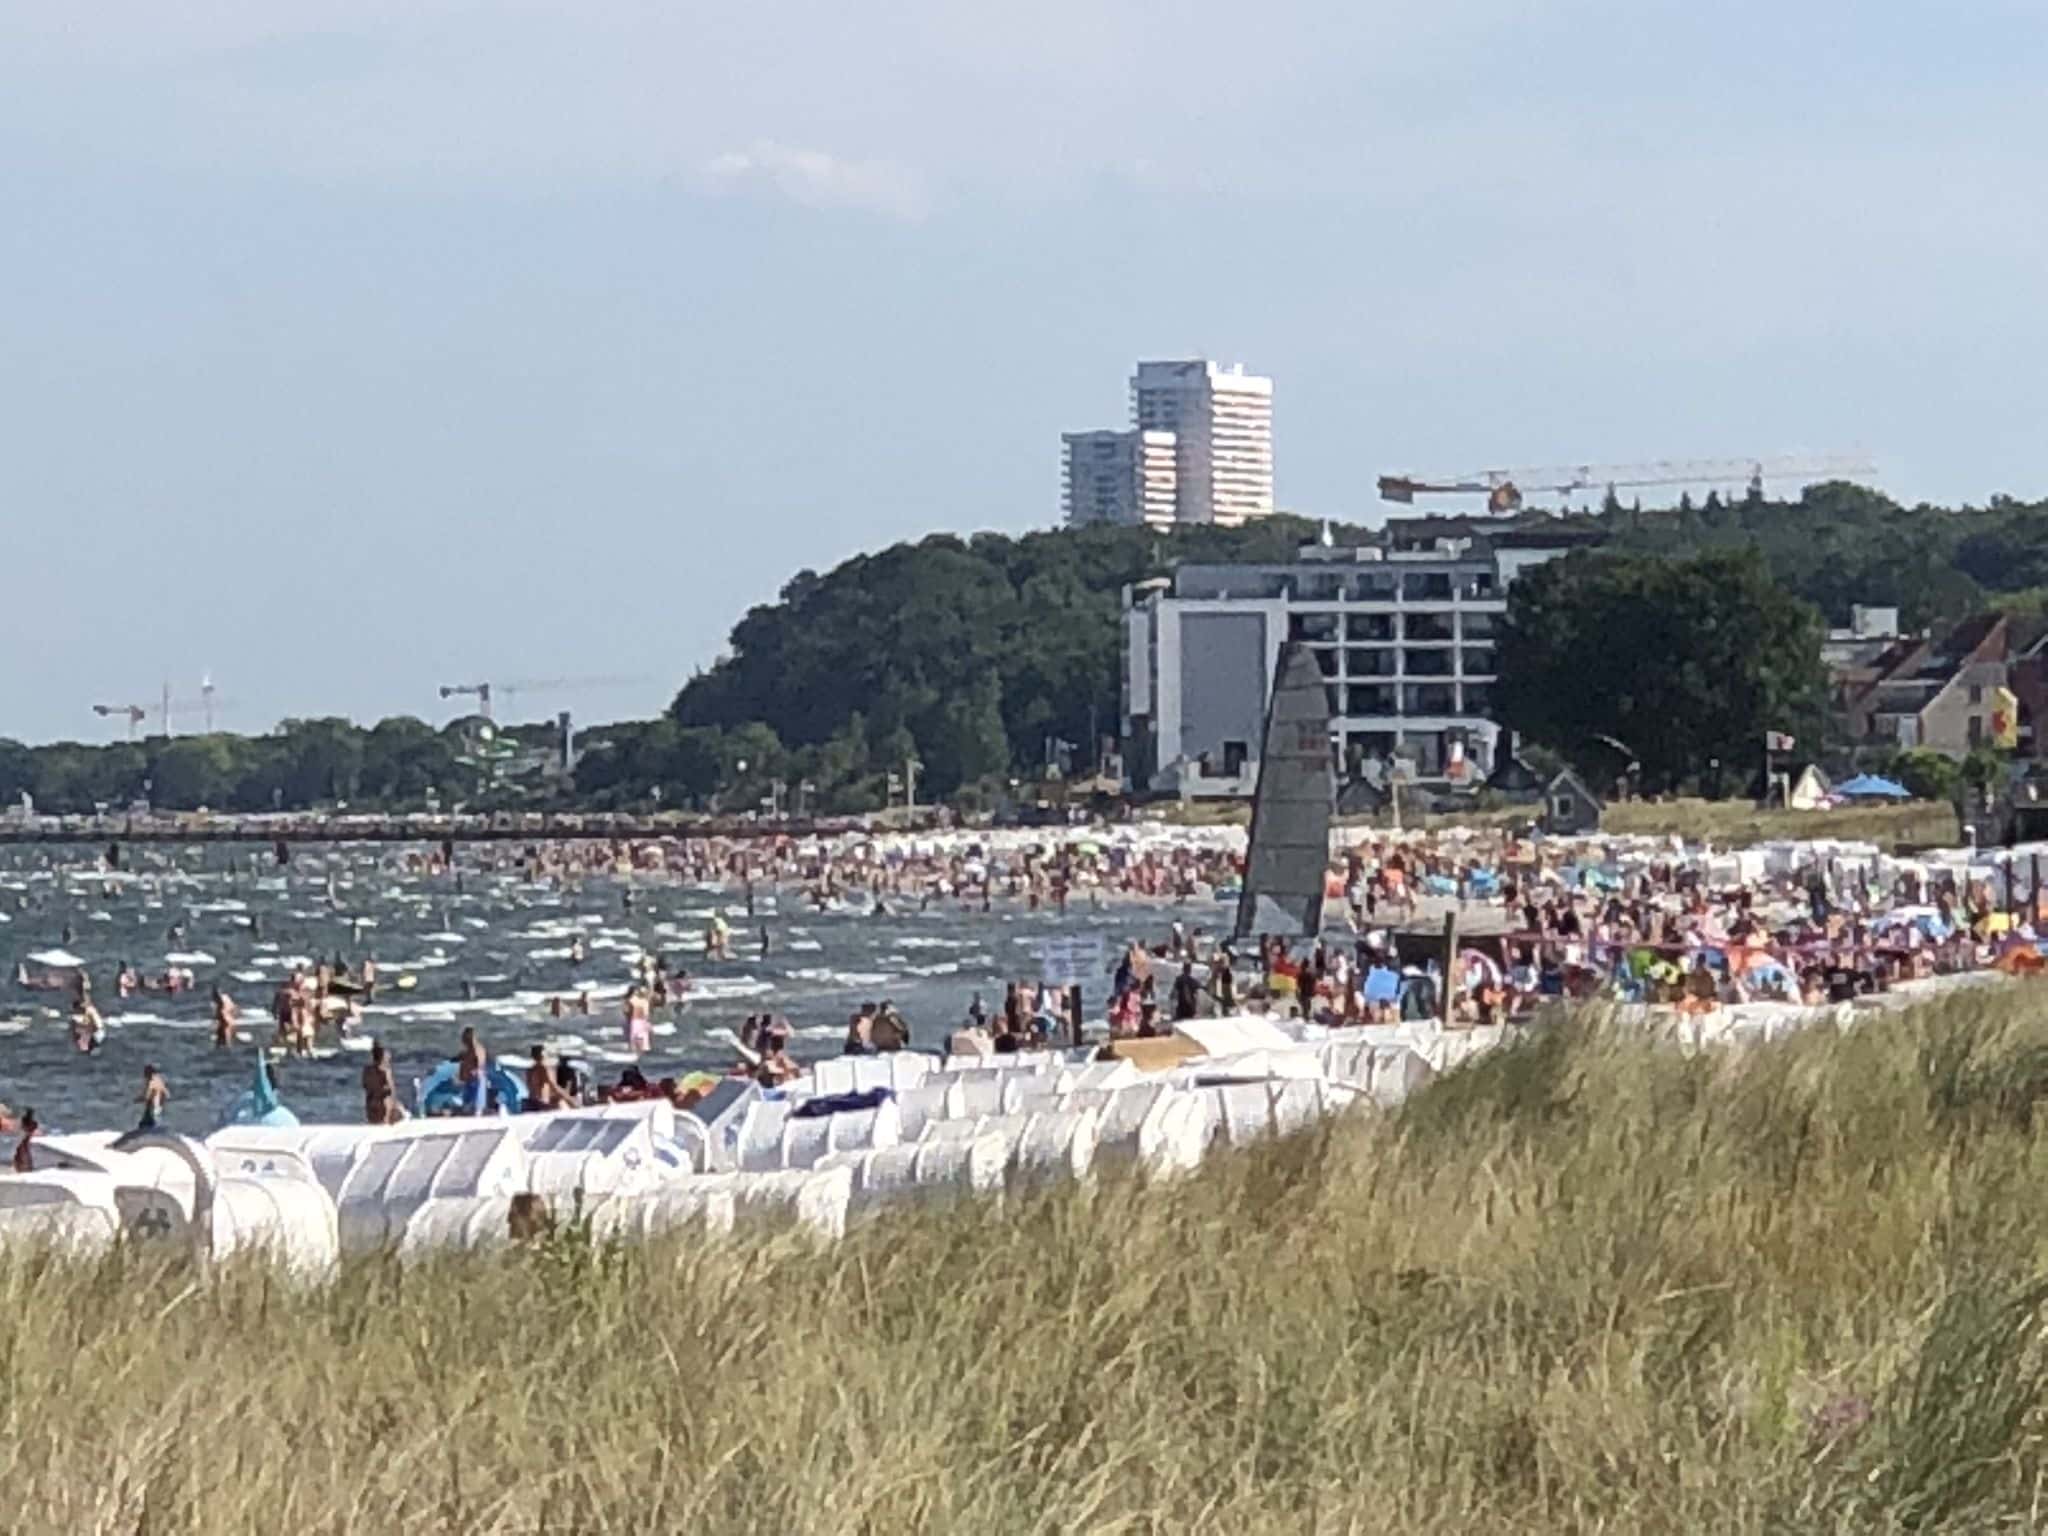 Volle, volle, hoge zomer in Scharbeutz: op sommige zomerdagen kun je geen voet op het strand op de grond krijgen. Foto: Sascha Tegtmeyer